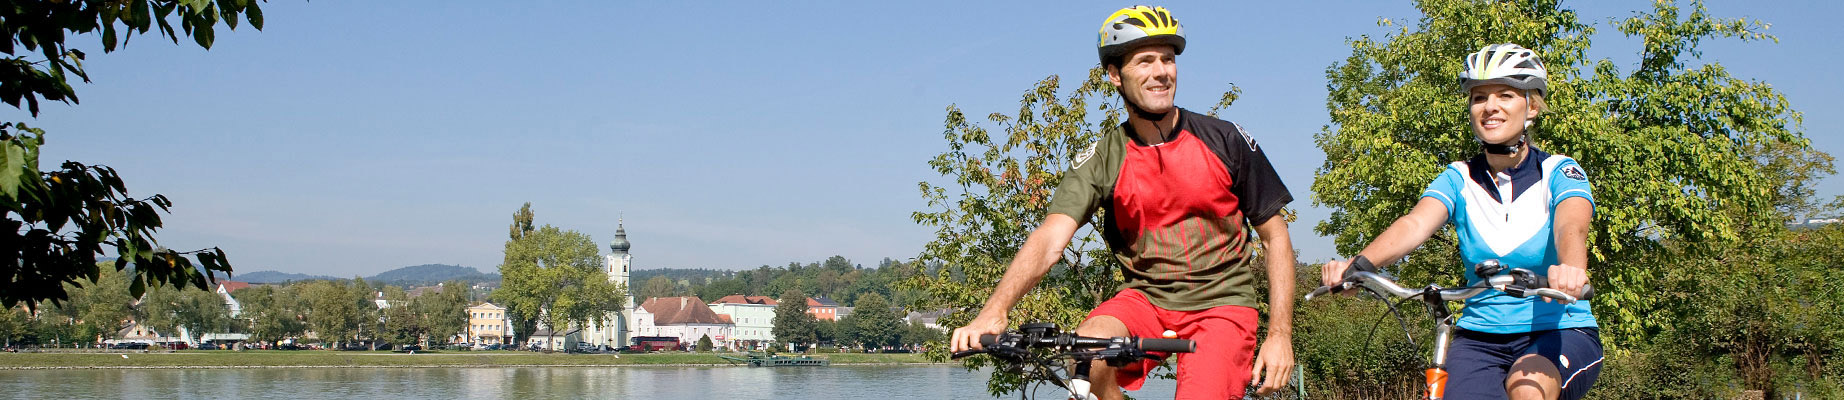 Radfahrer an der Donau